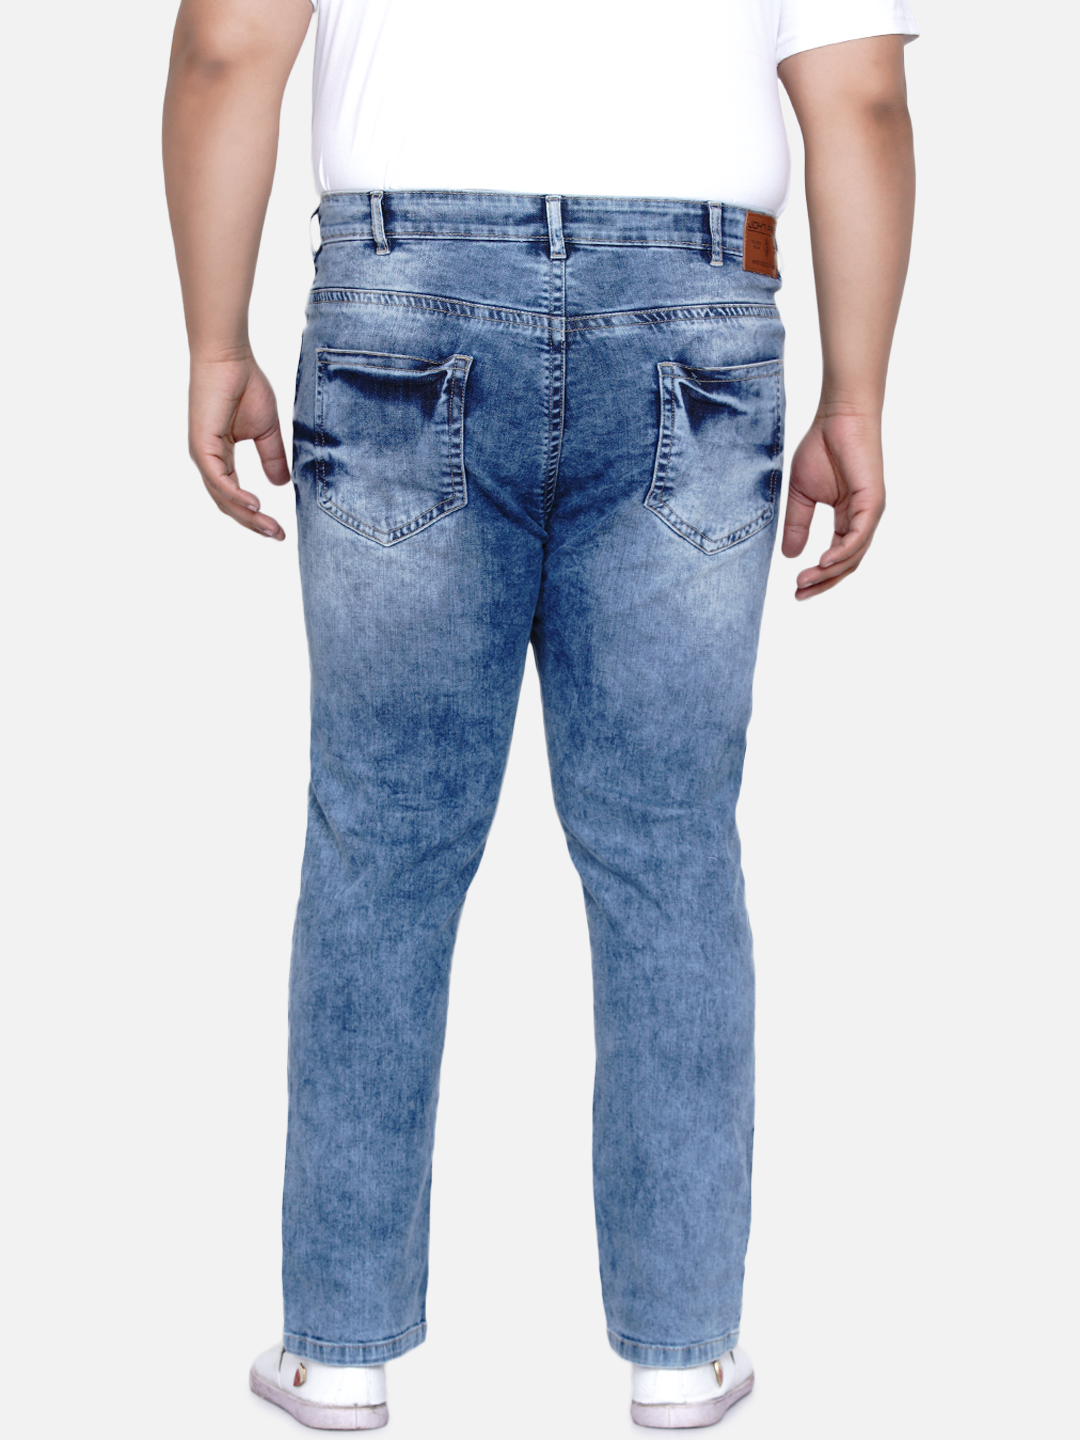 bottomwear/jeans/JPJ12181/jpj12181-5.jpg